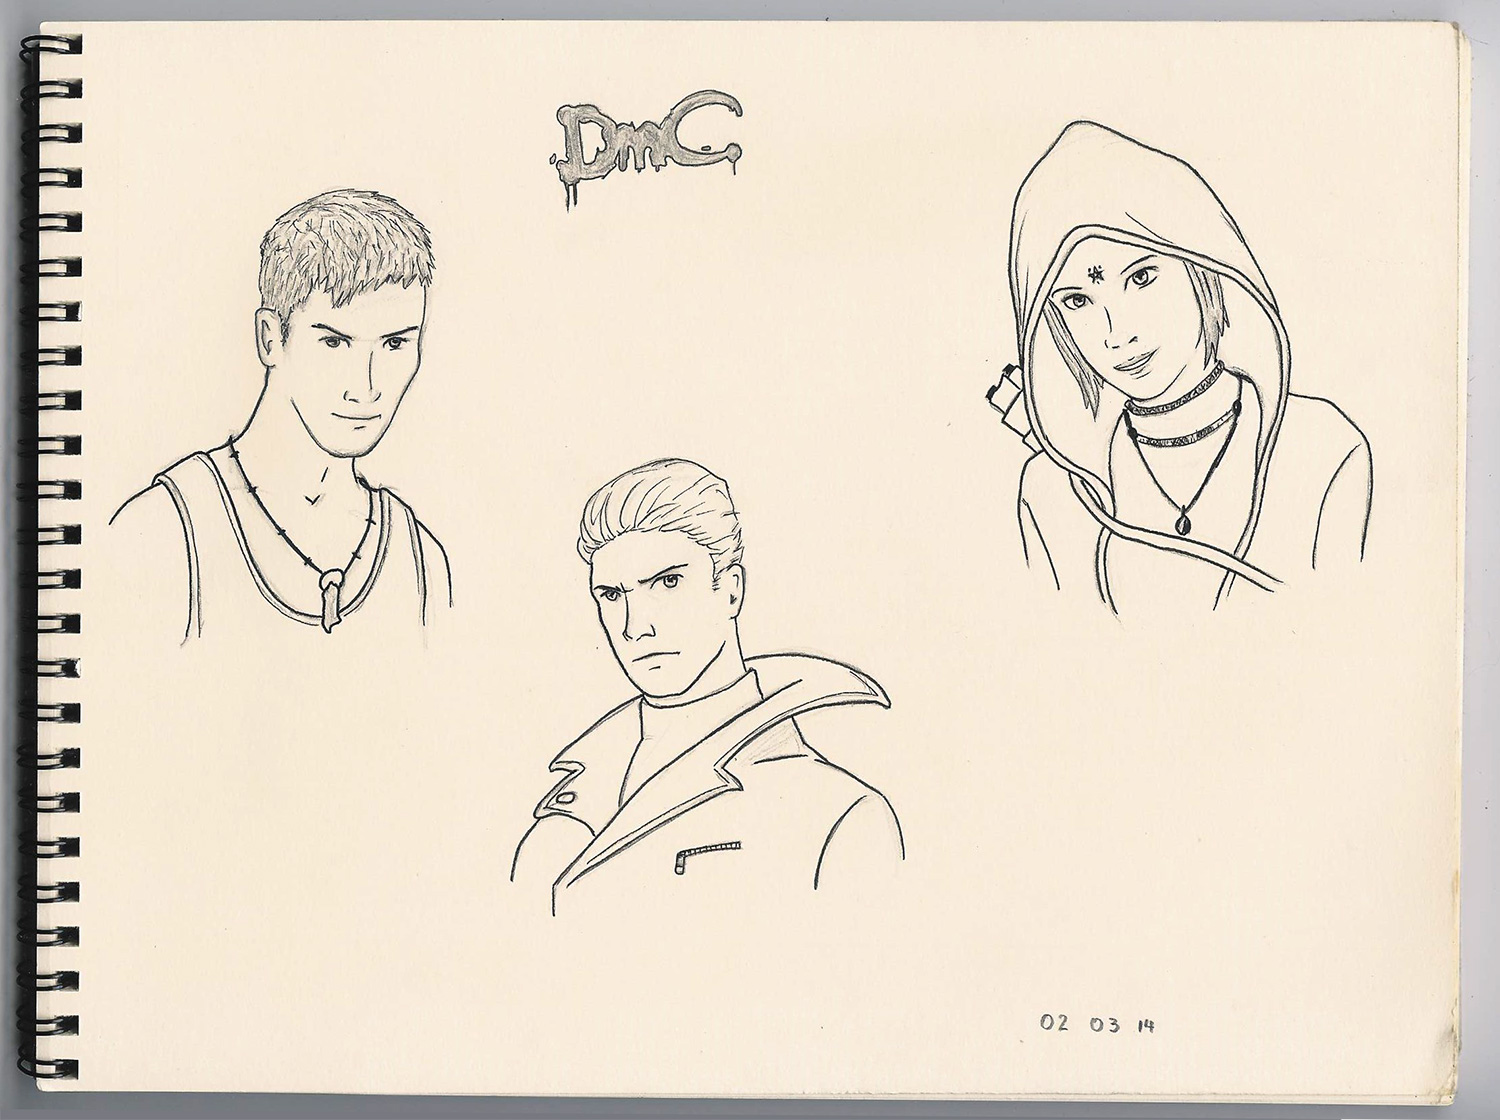 DmC - Dante, Vergil and Kat